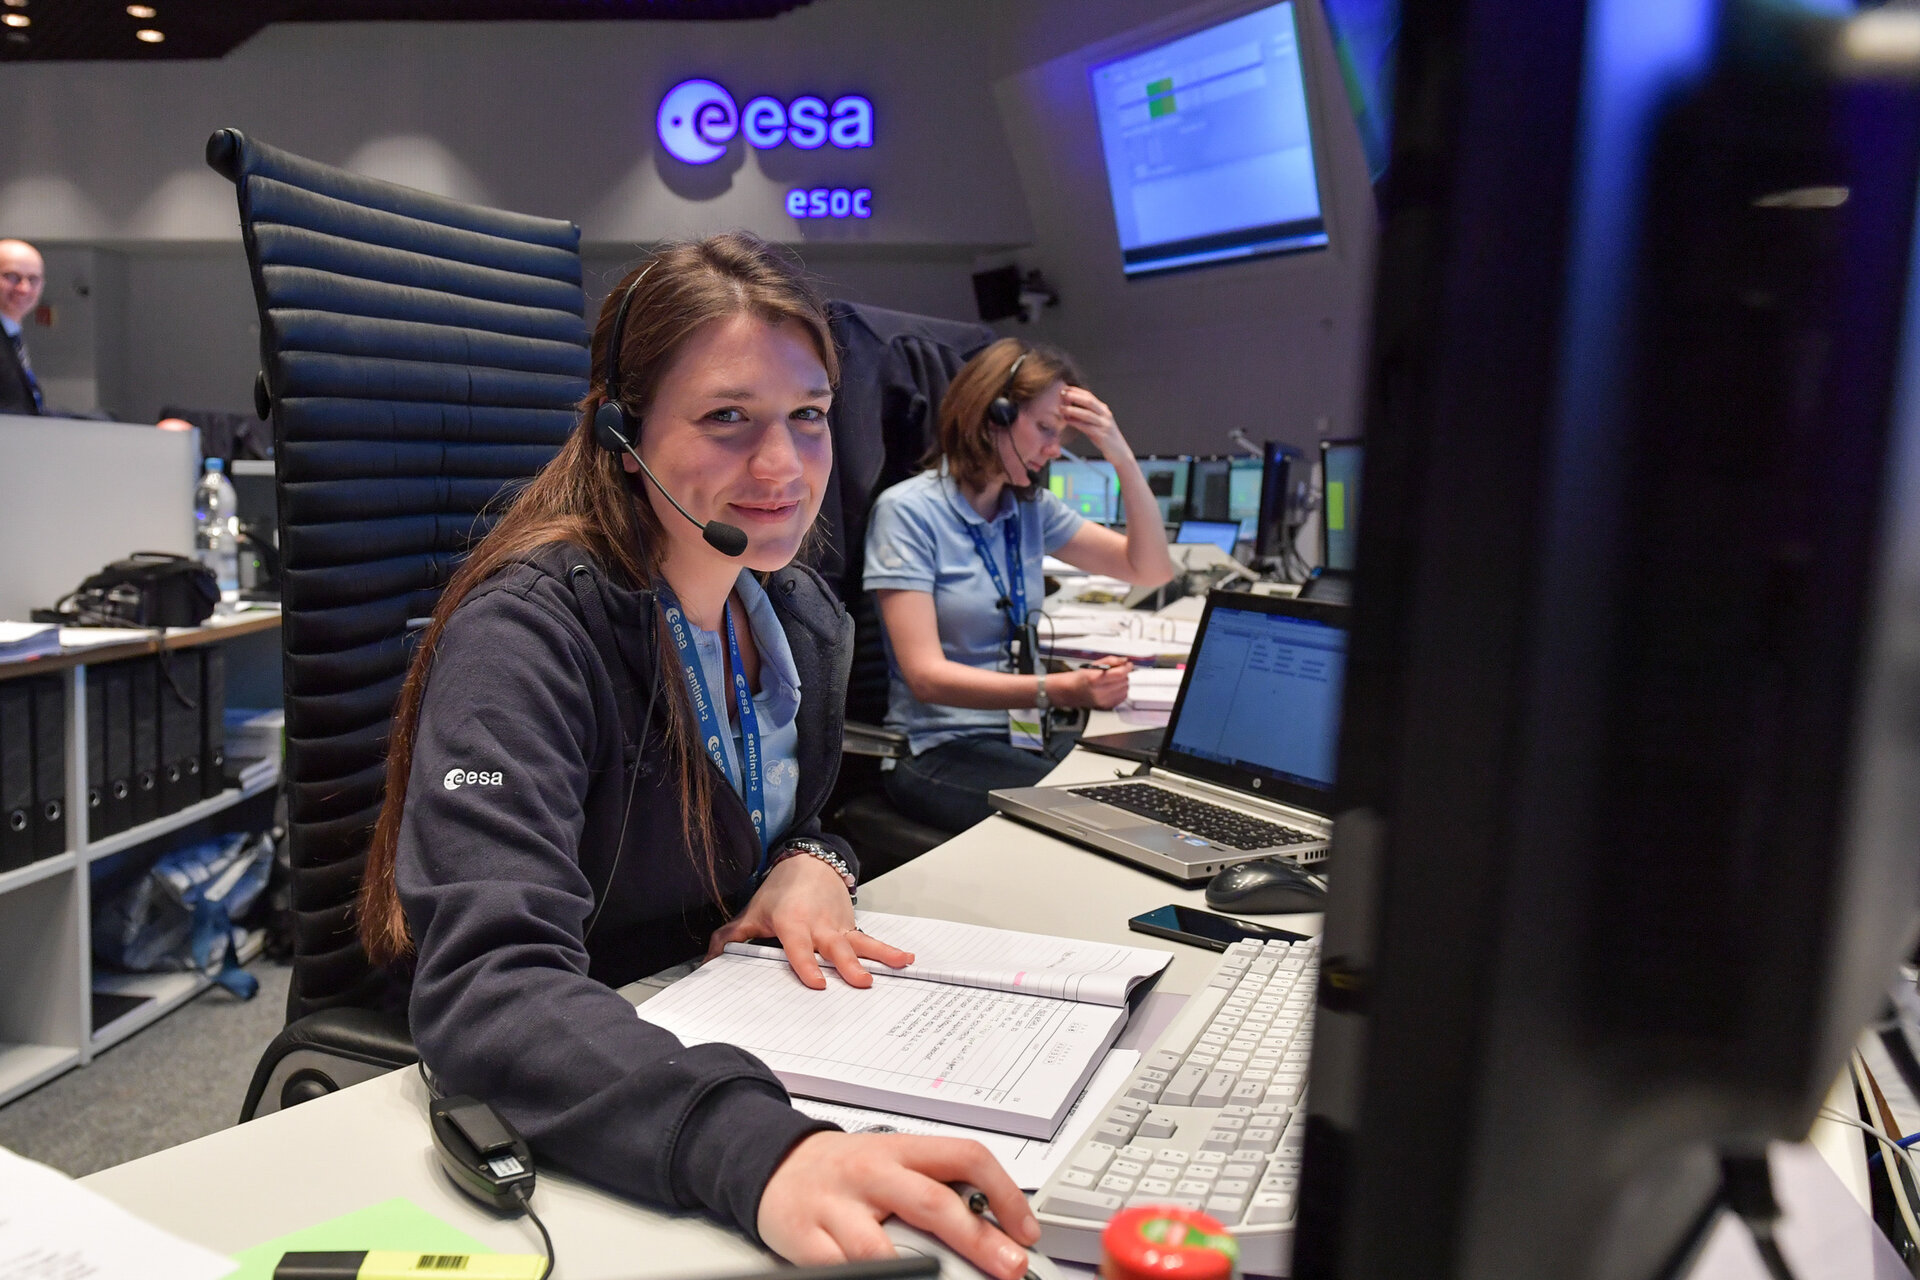 Mit einem 3- bis 6-monatigen Praktikum bei der ESA sammelst Du erste Erfahrungen und erhältst spannende Einblicke in die Arbeit am Satellitenkontrollzentrum ESOC.